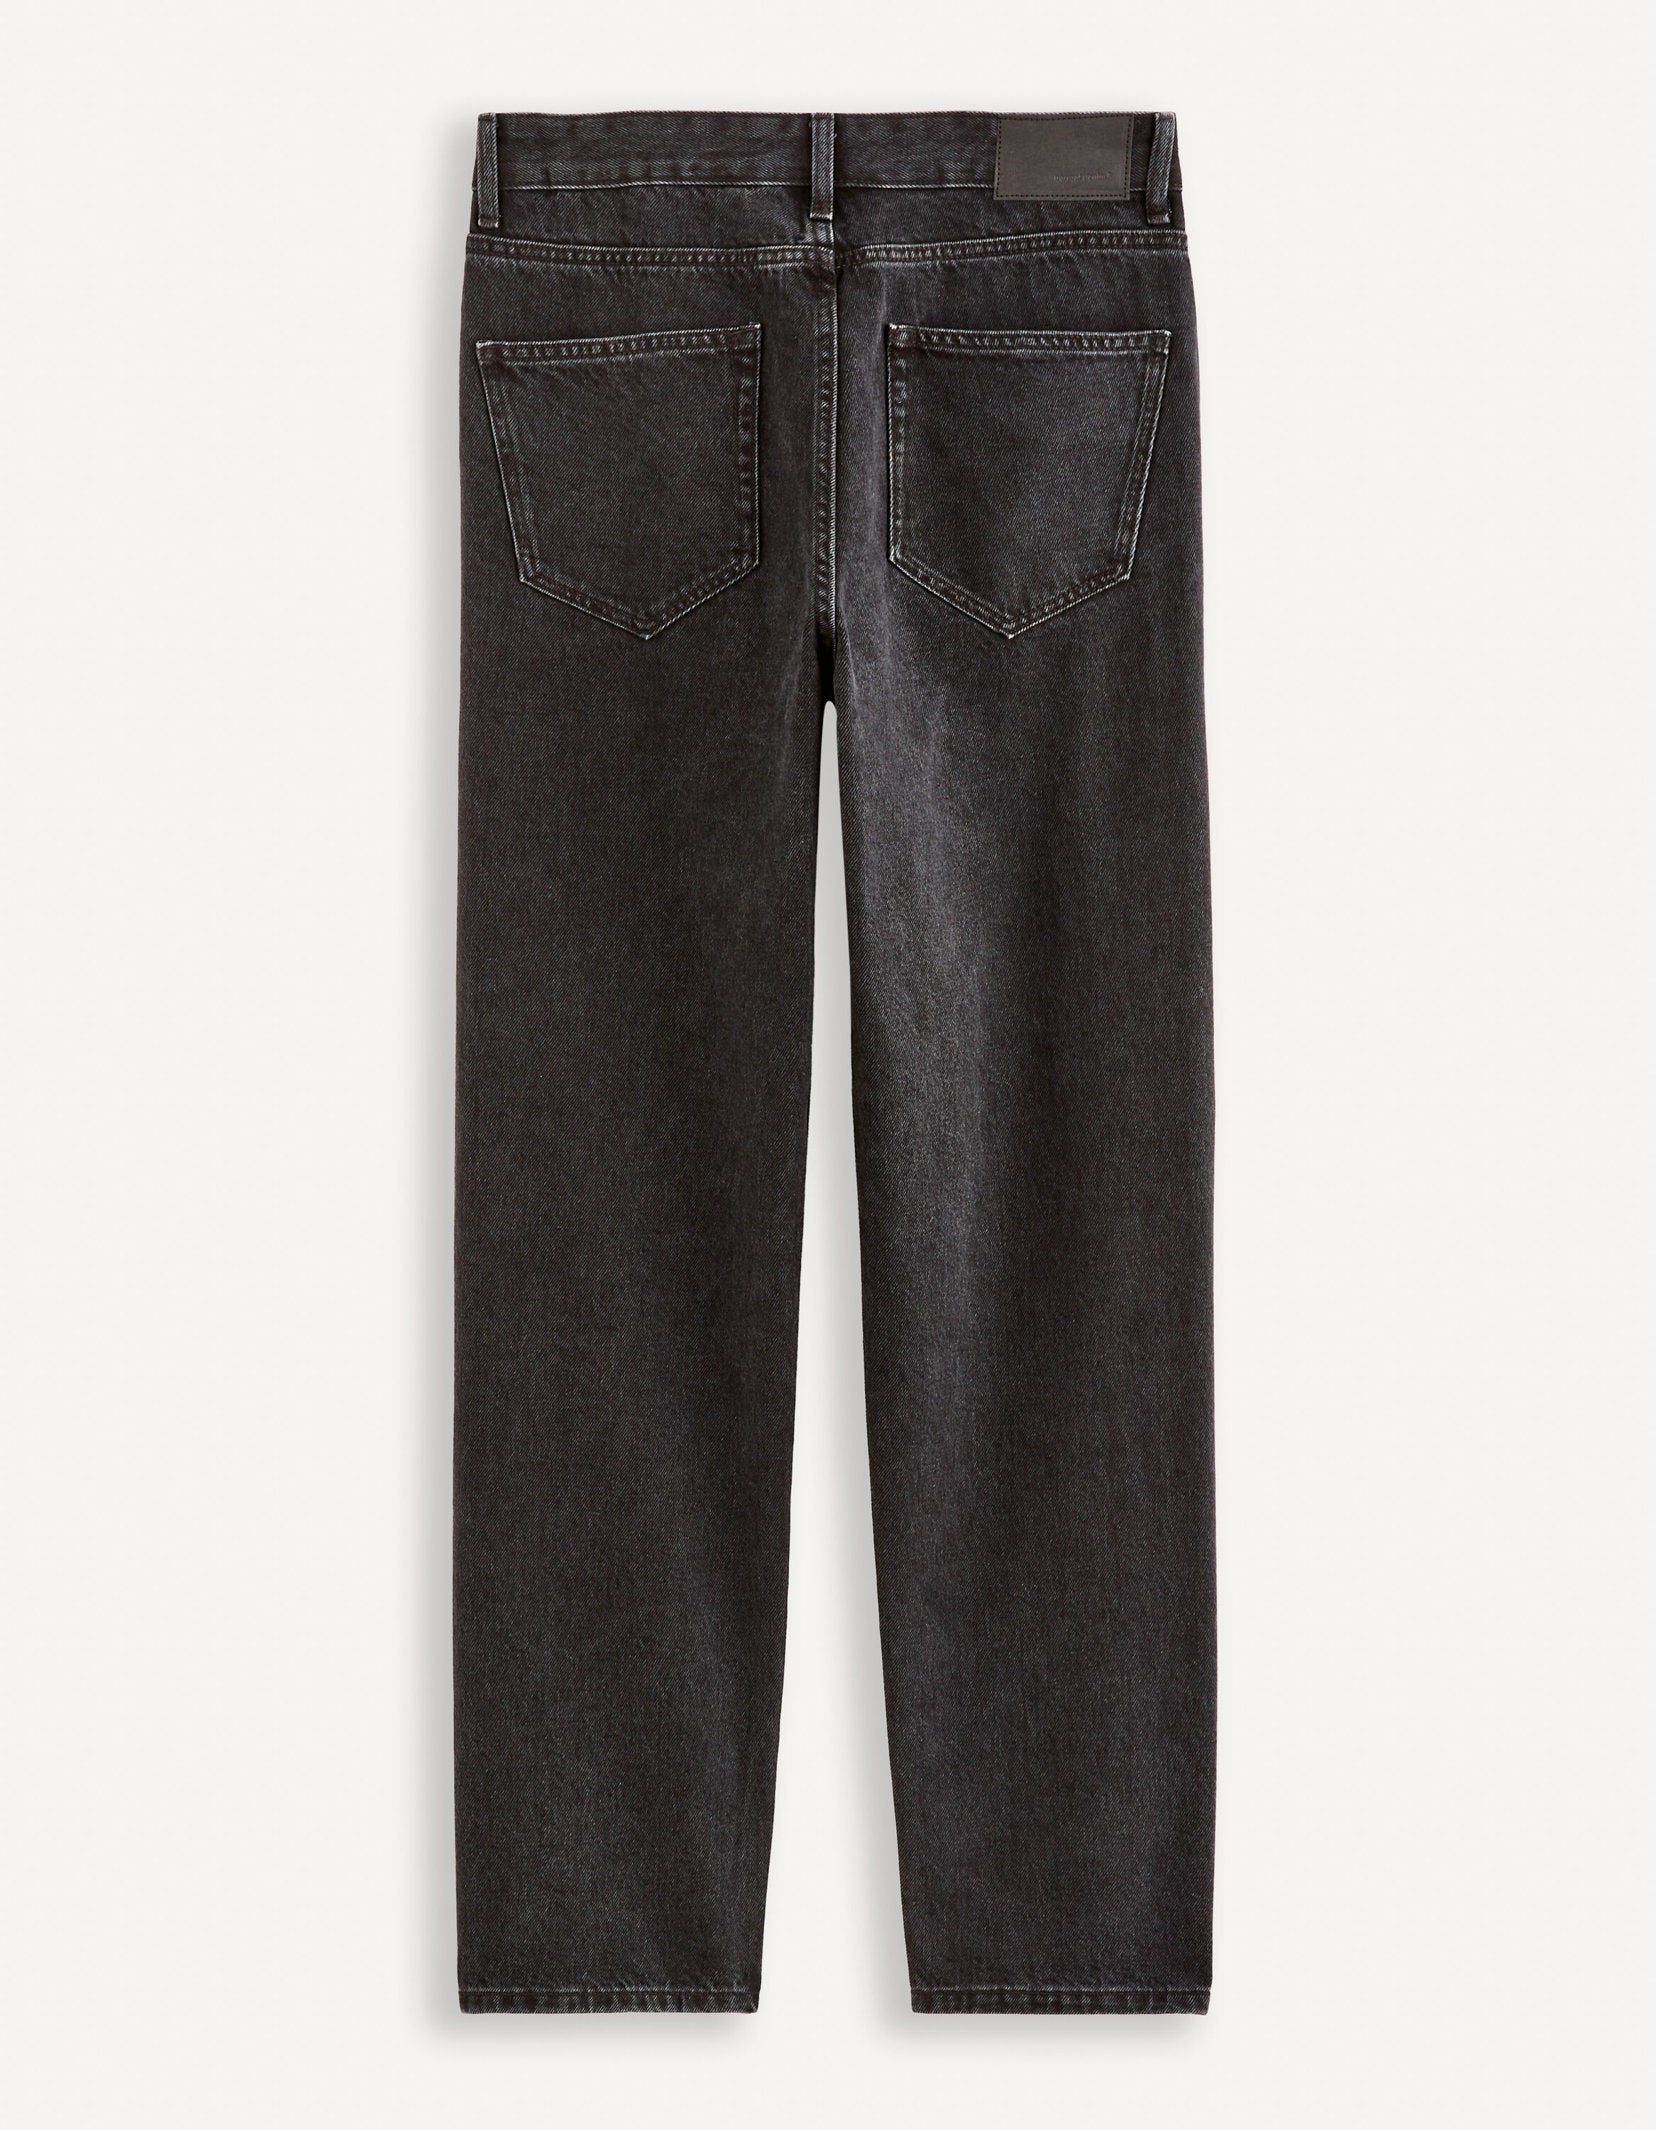 C75 Loose Jeans 100% Cotton_FOLOOSE_NOIR_06